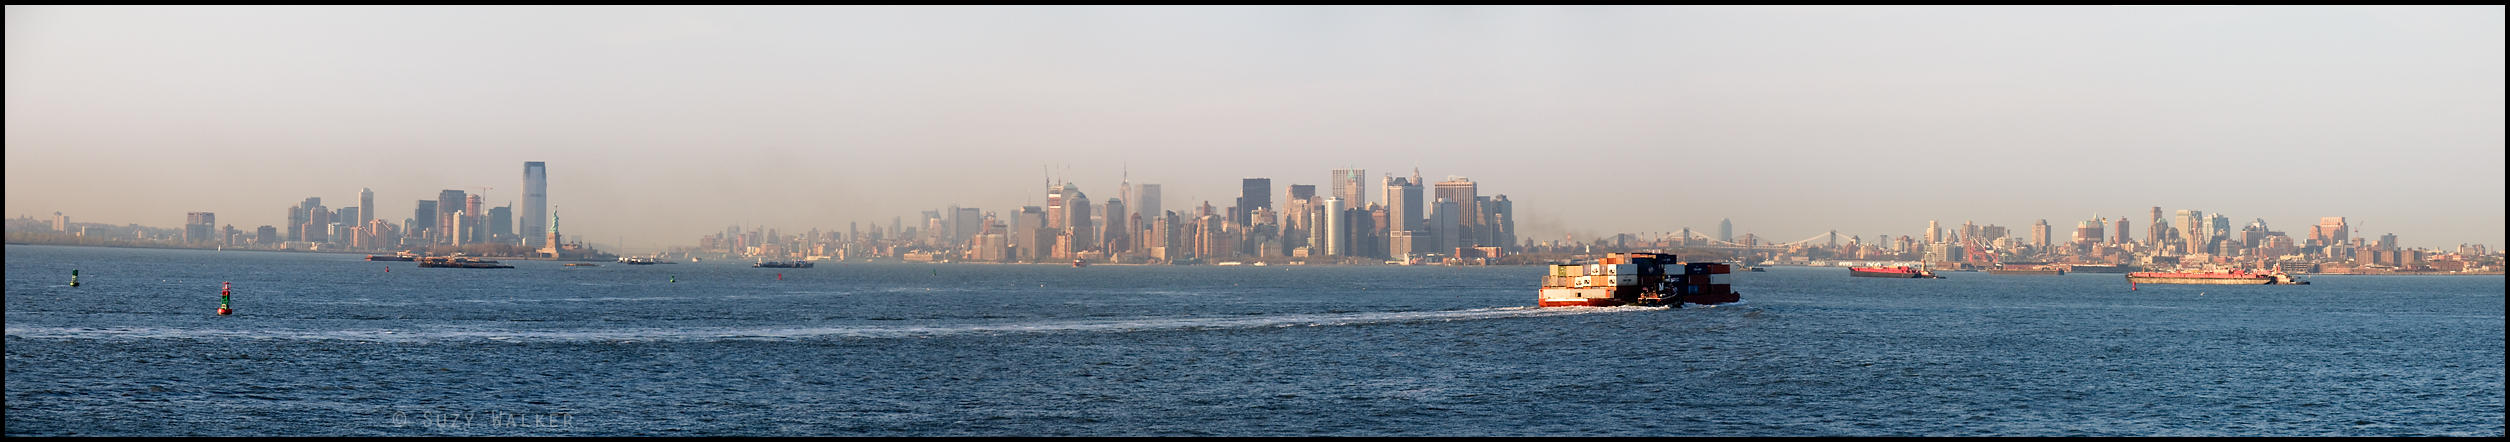 New York Panorama 2008